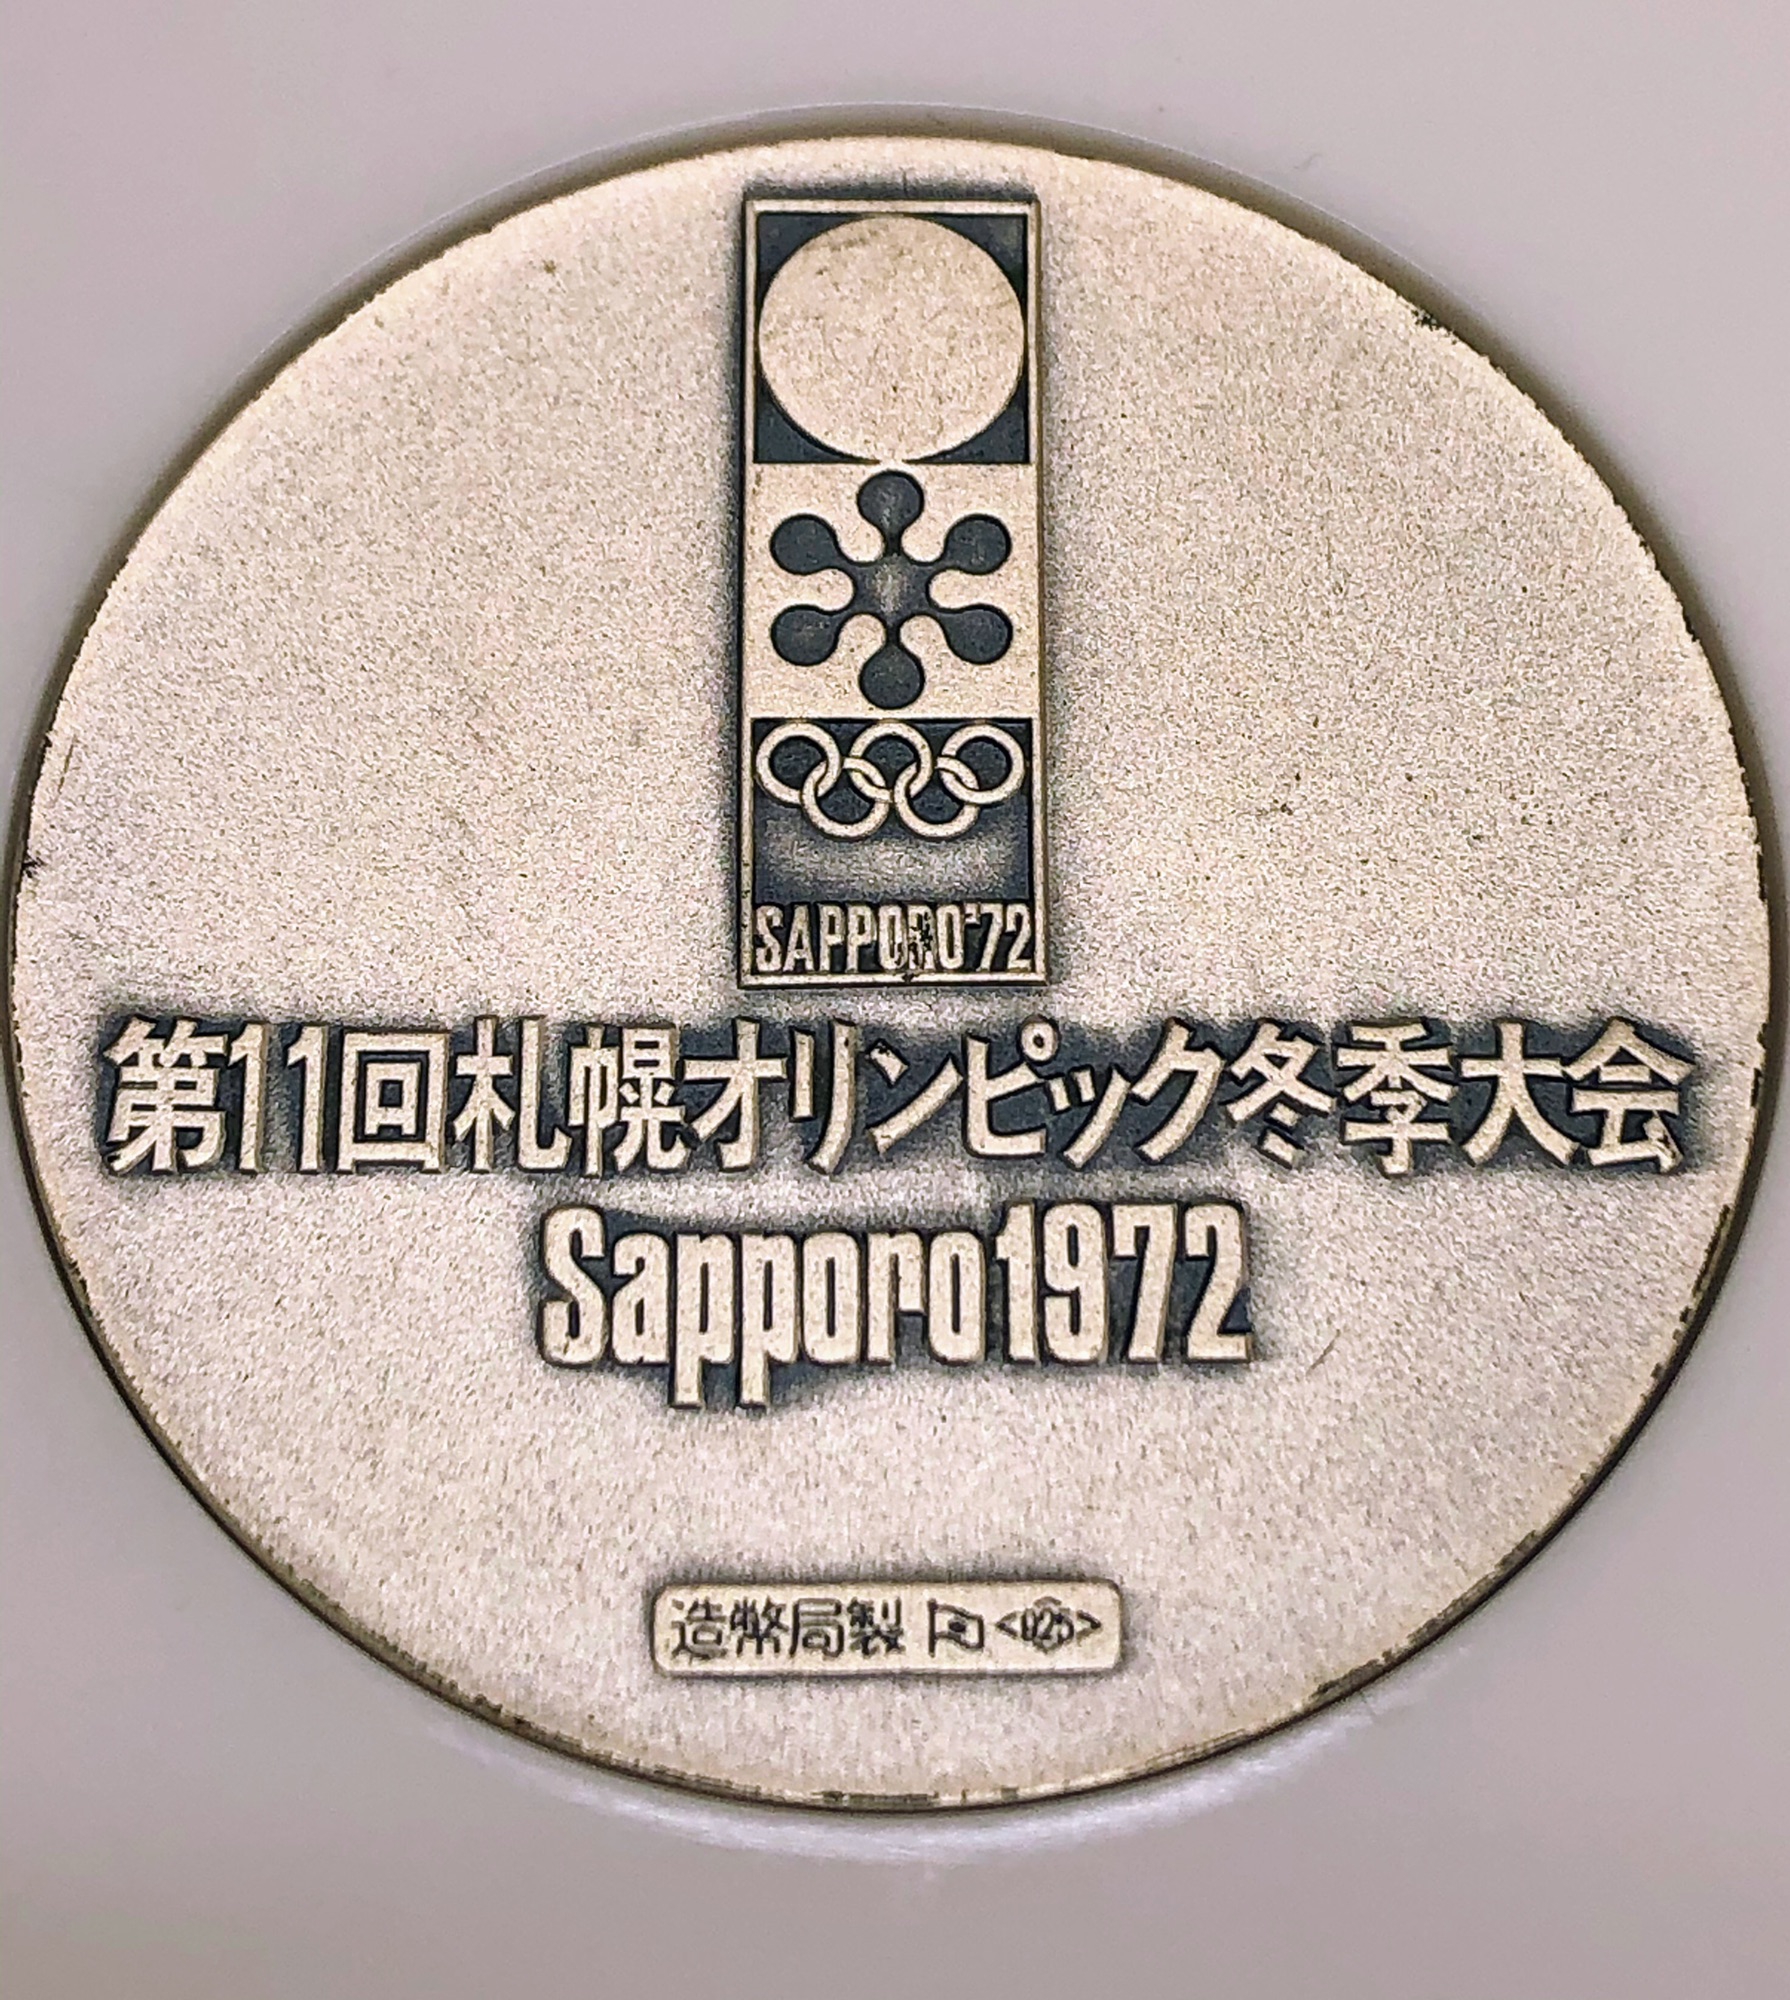 札幌オリンピック公式記念プラチナメダル - コレクション